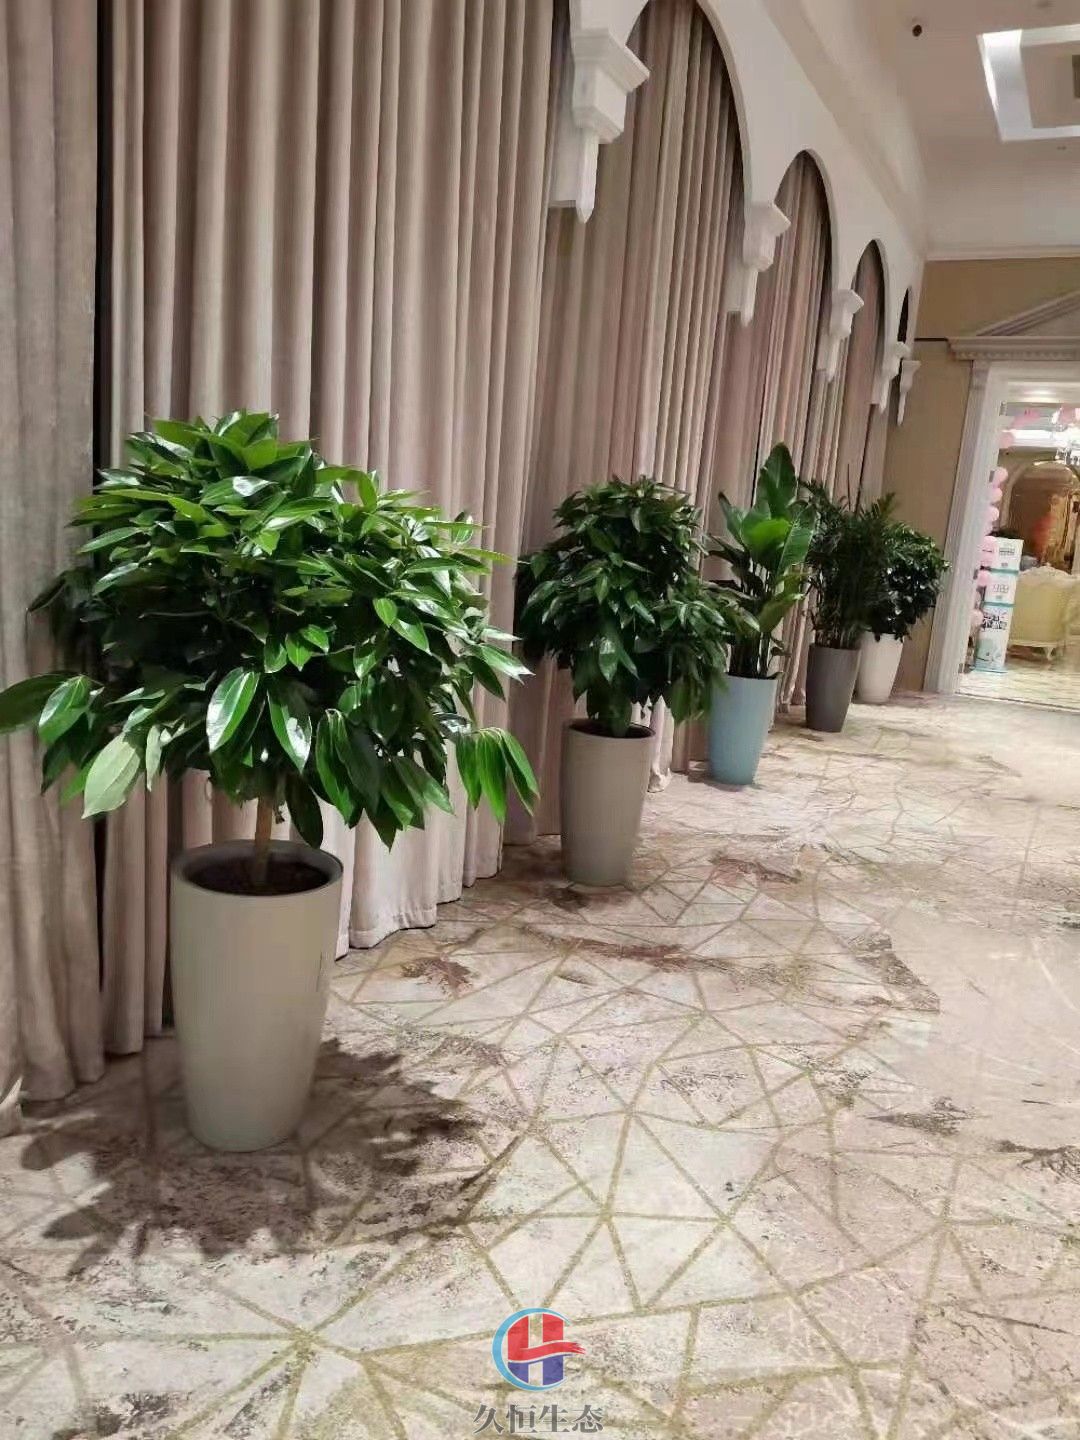 秀洲酒店走廊花卉绿植摆放